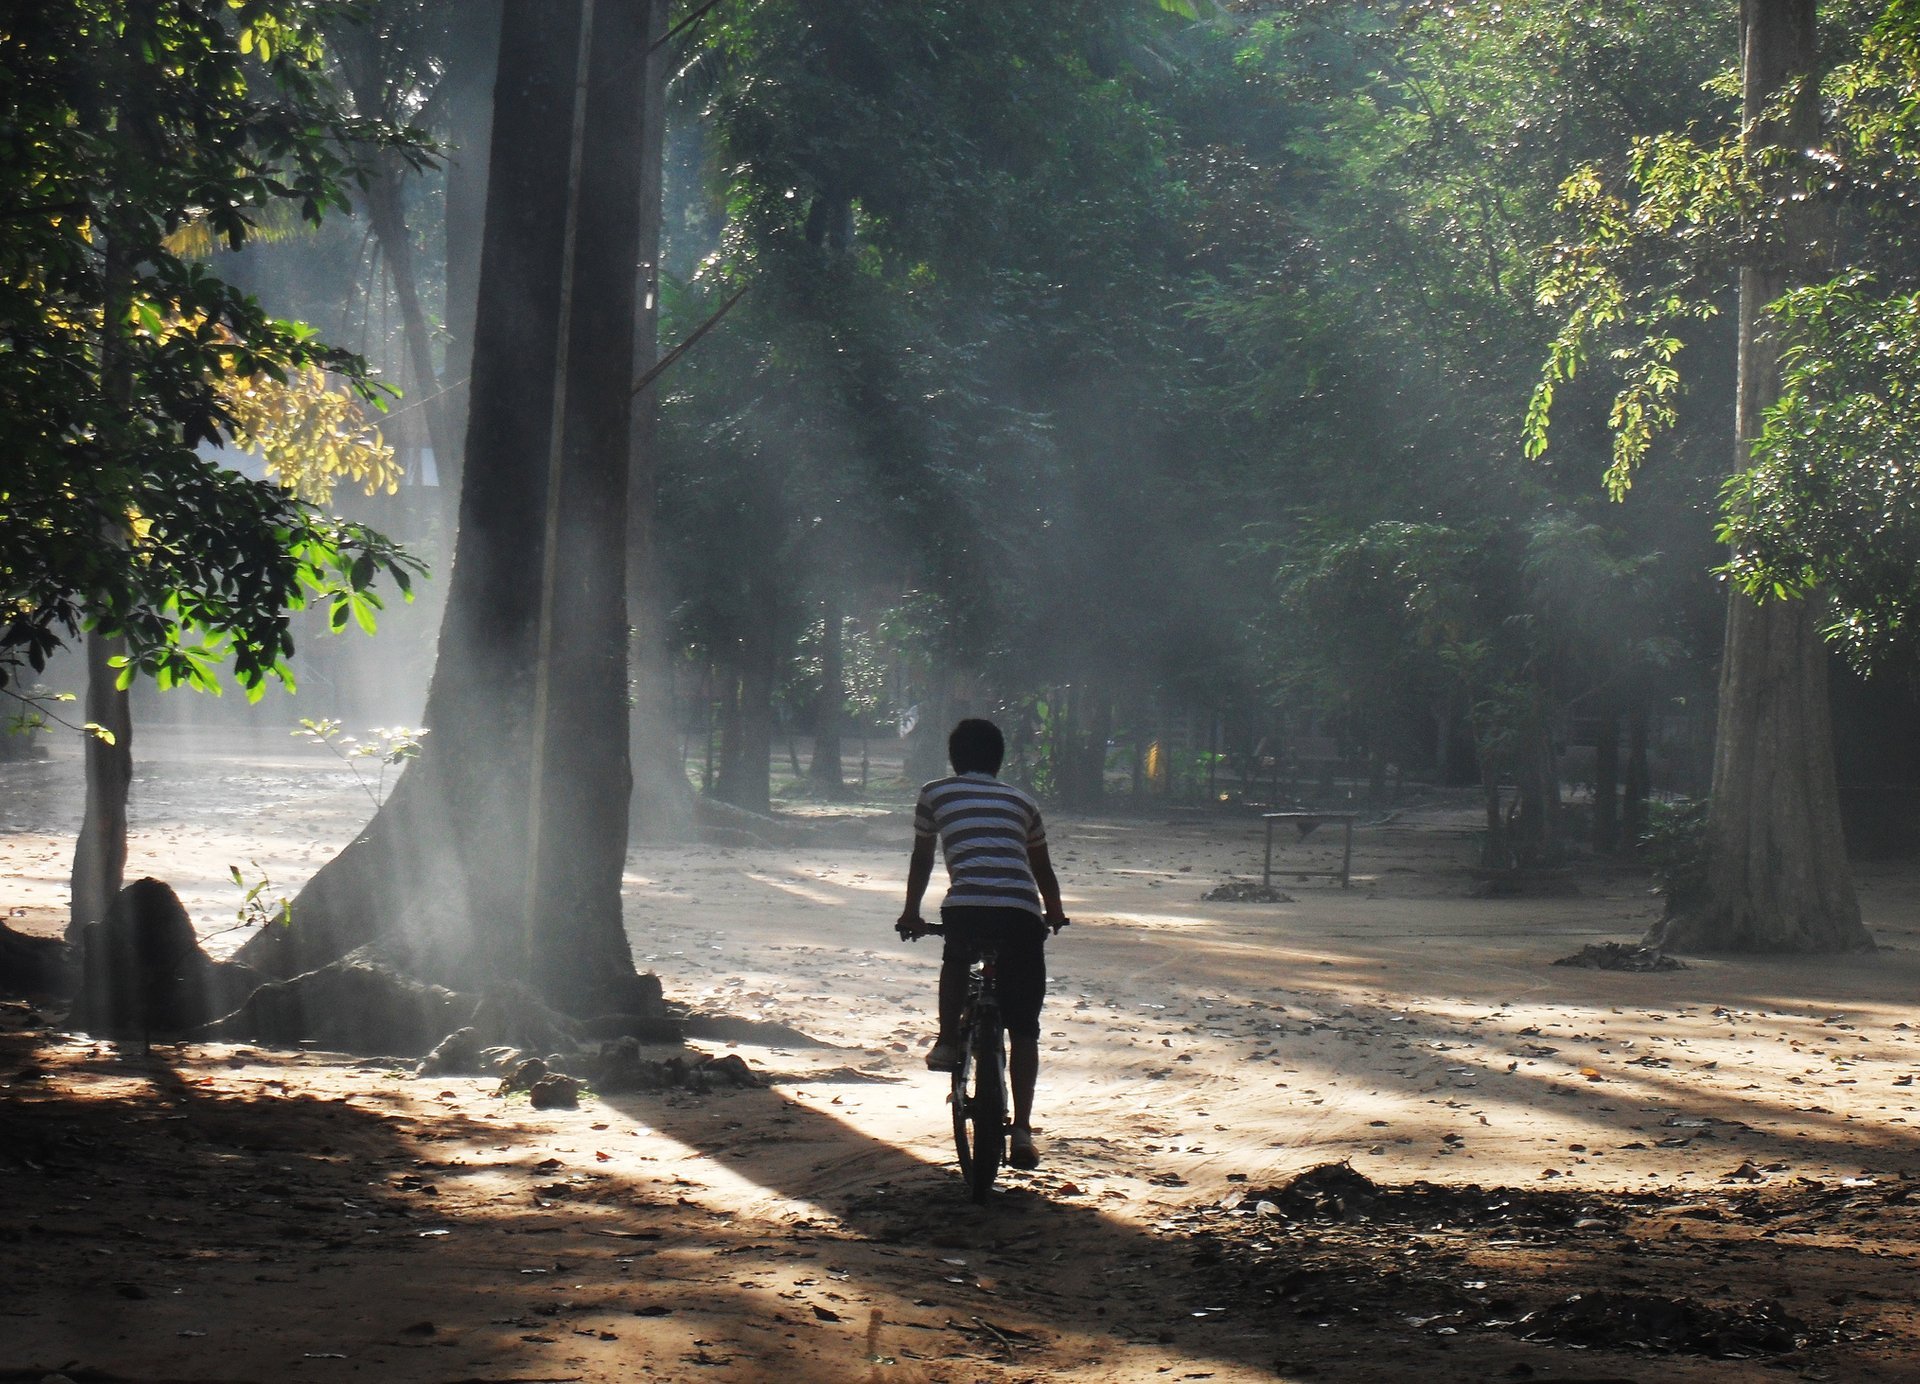 Biking Cambodia